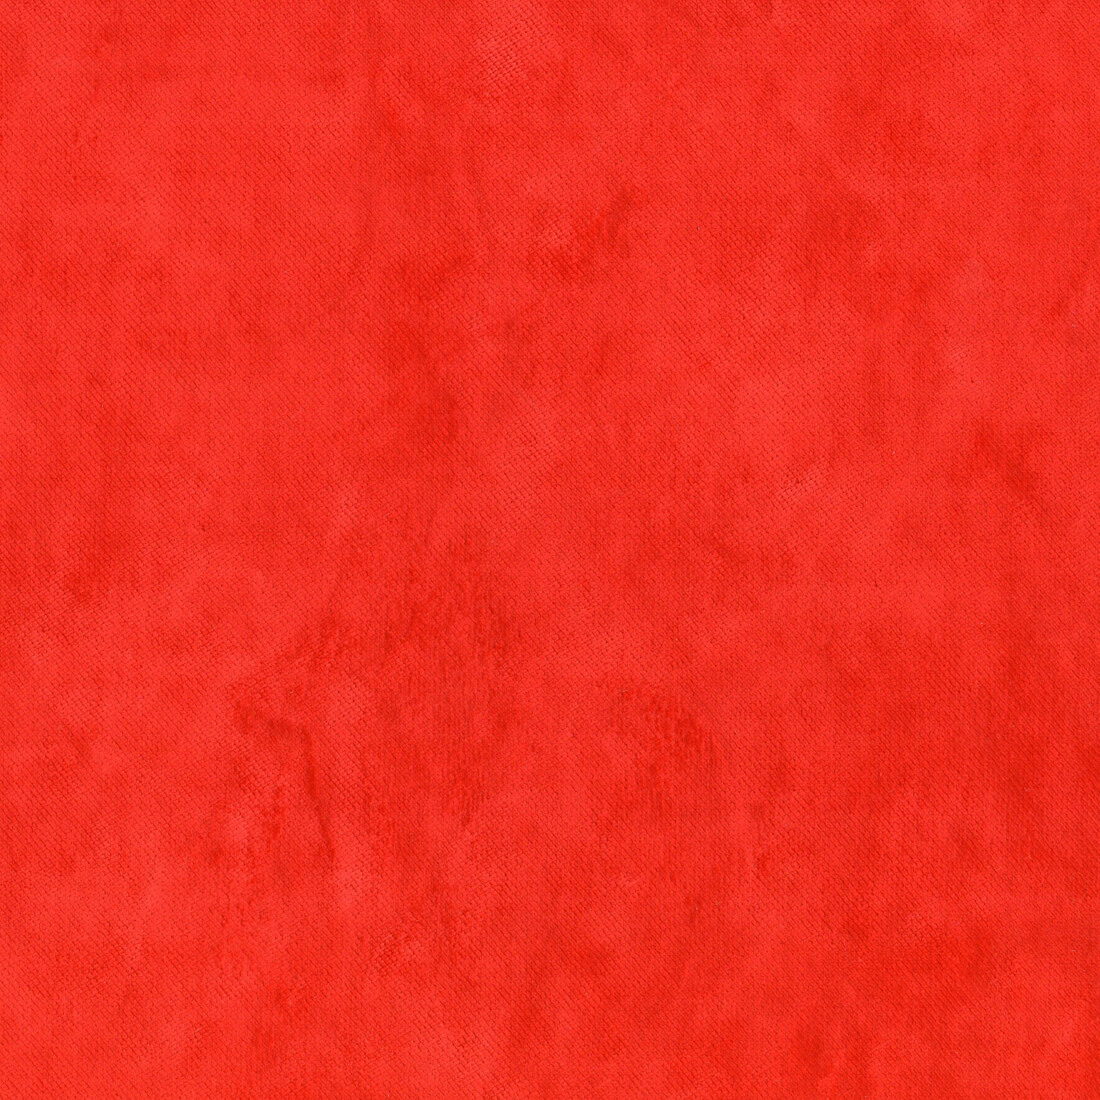 PERPIGNAN-RED-3.jpg